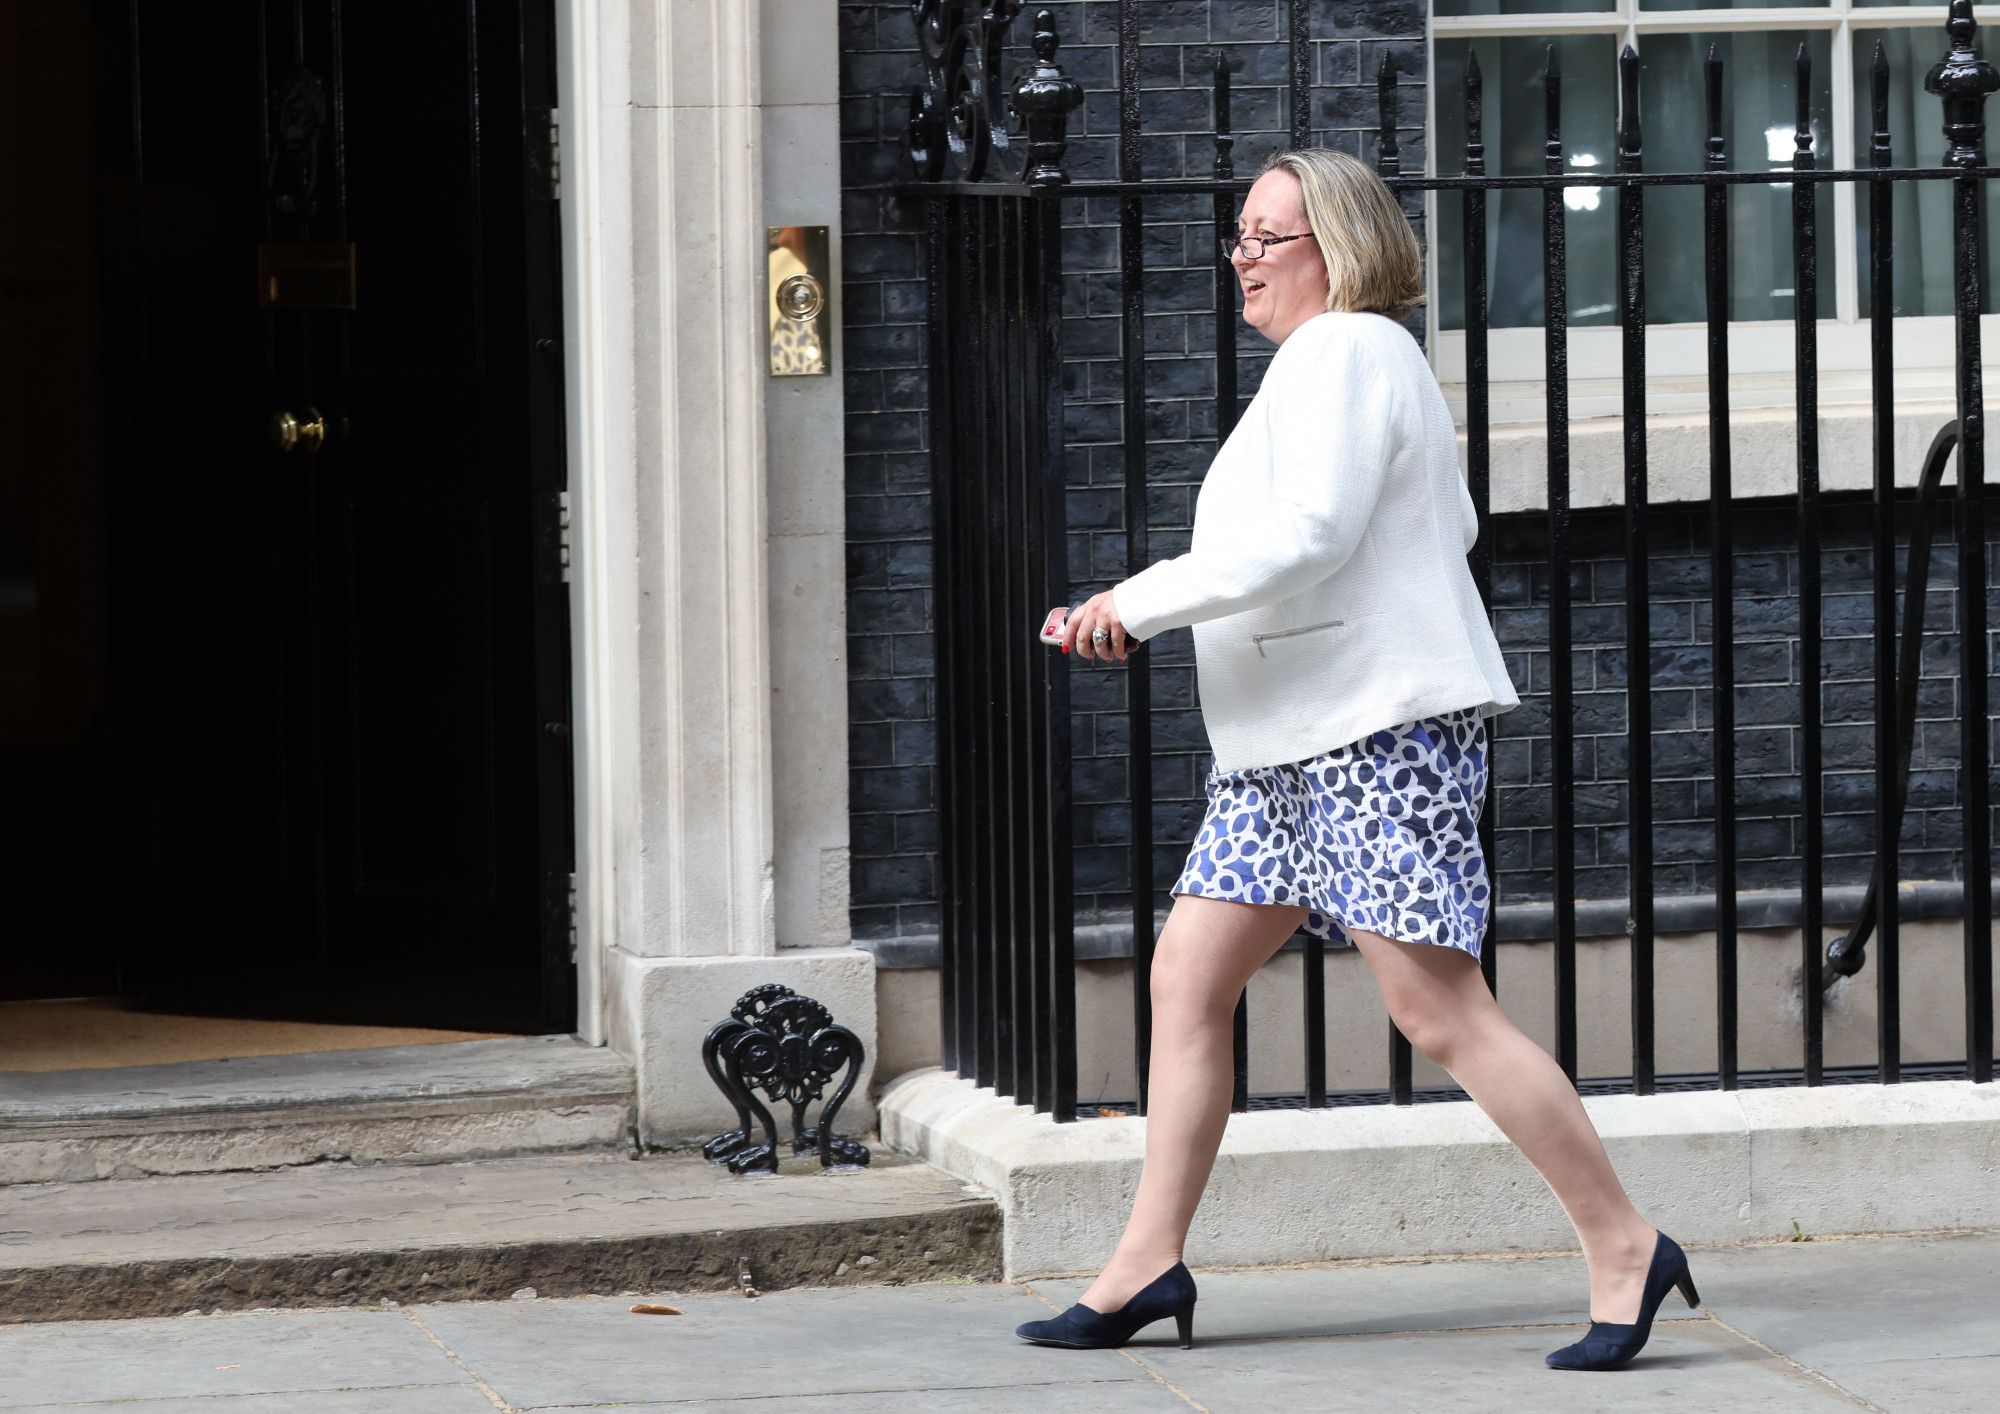 Boris Johnsont több minisztere is épp arról győzködi, hogy mondjon le